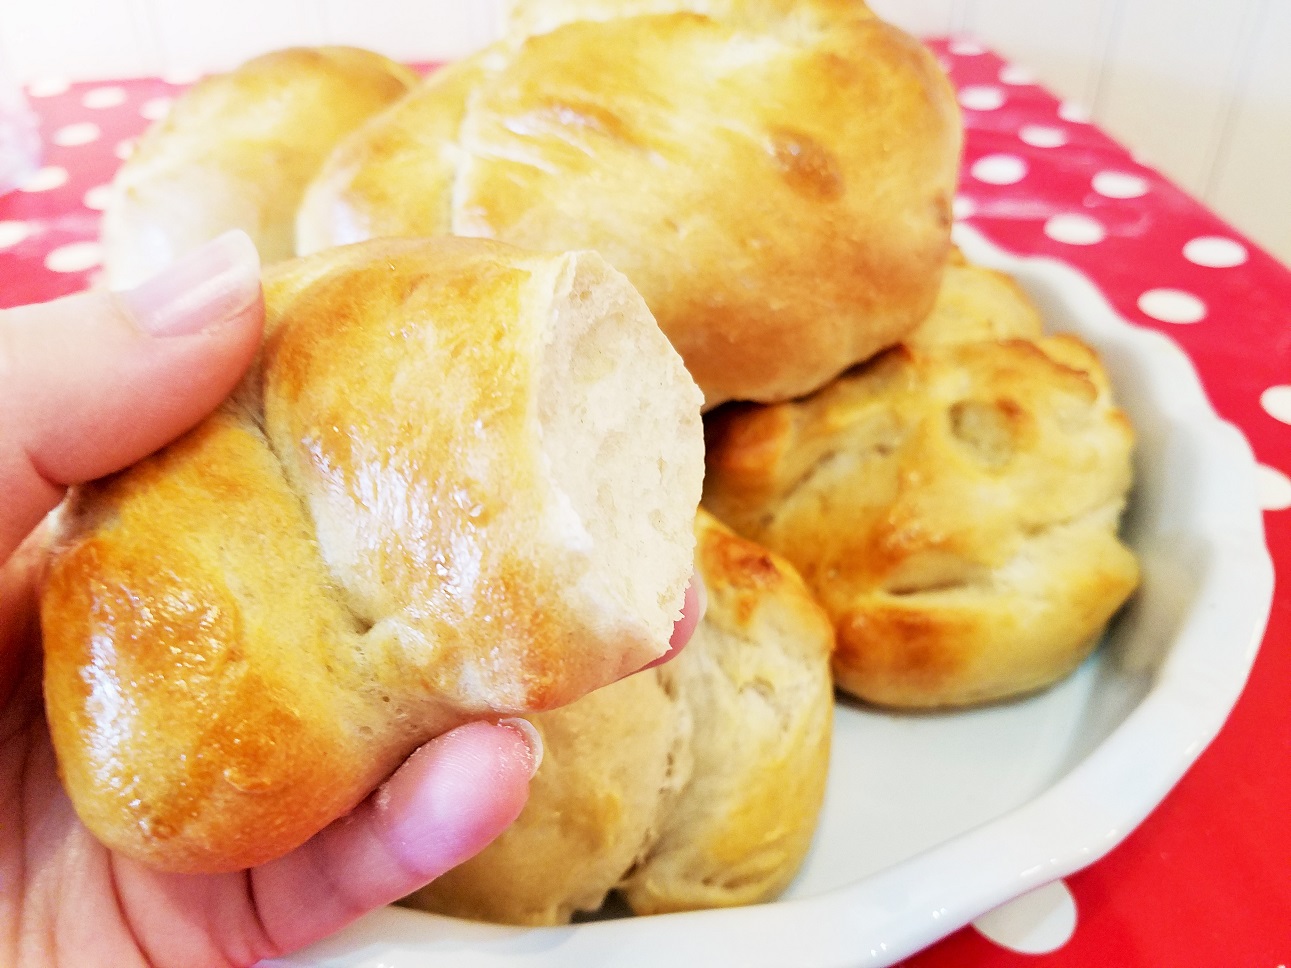 Homemade bread from a bread maker - rolls